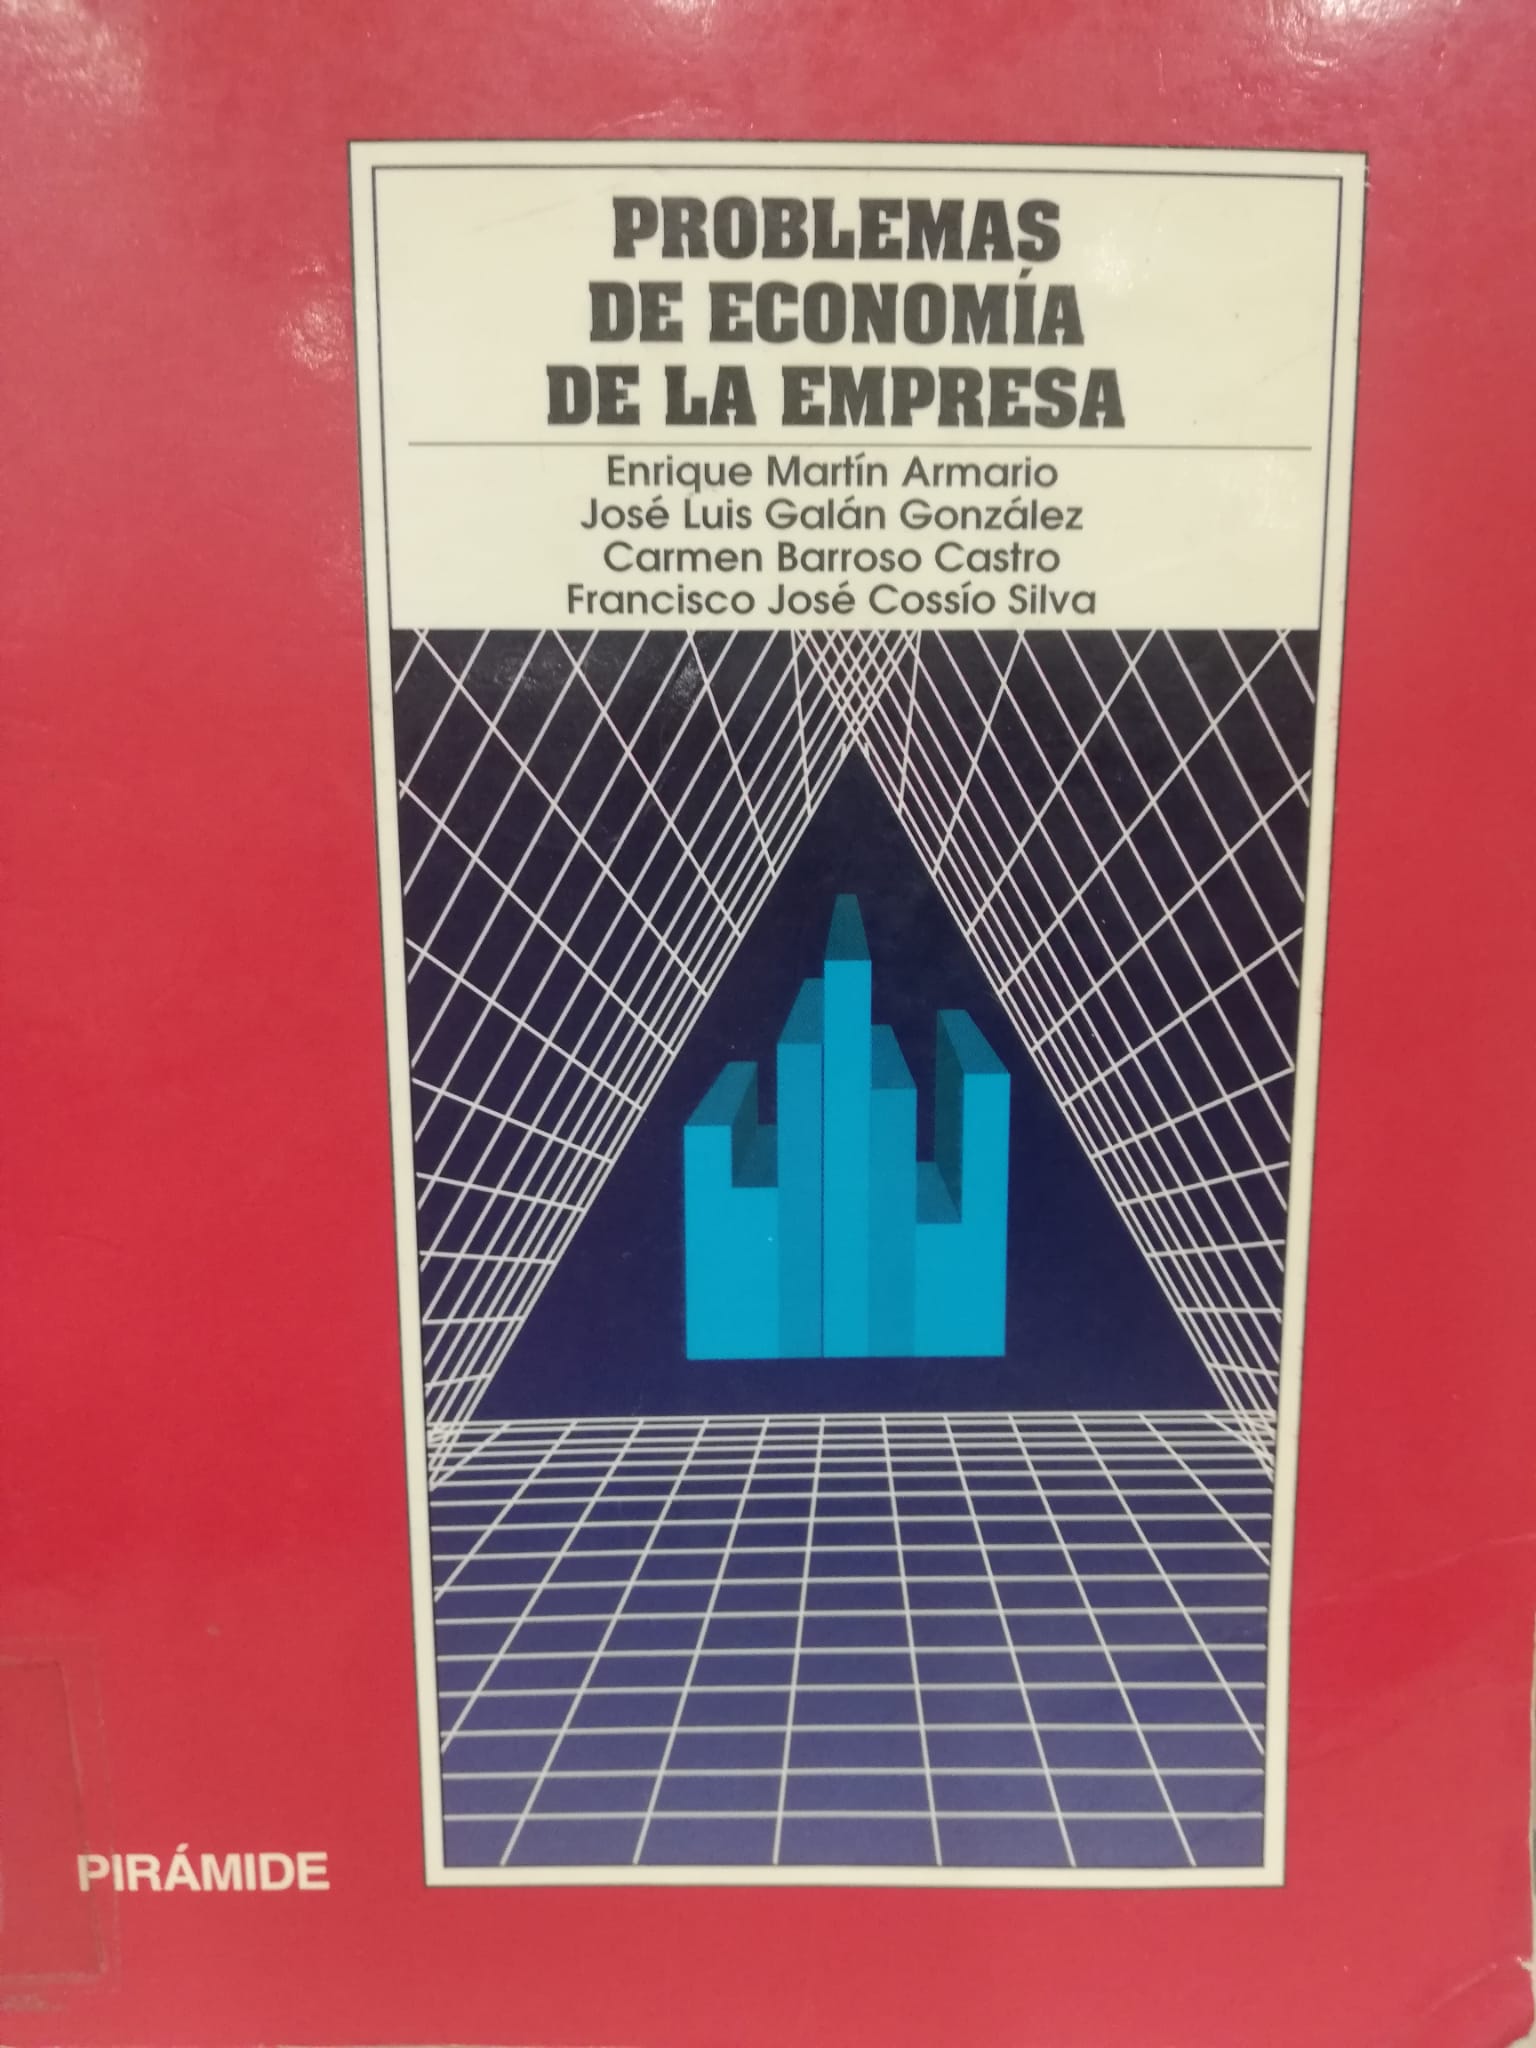 Imagen de portada del libro Problemas de economía de la empresa